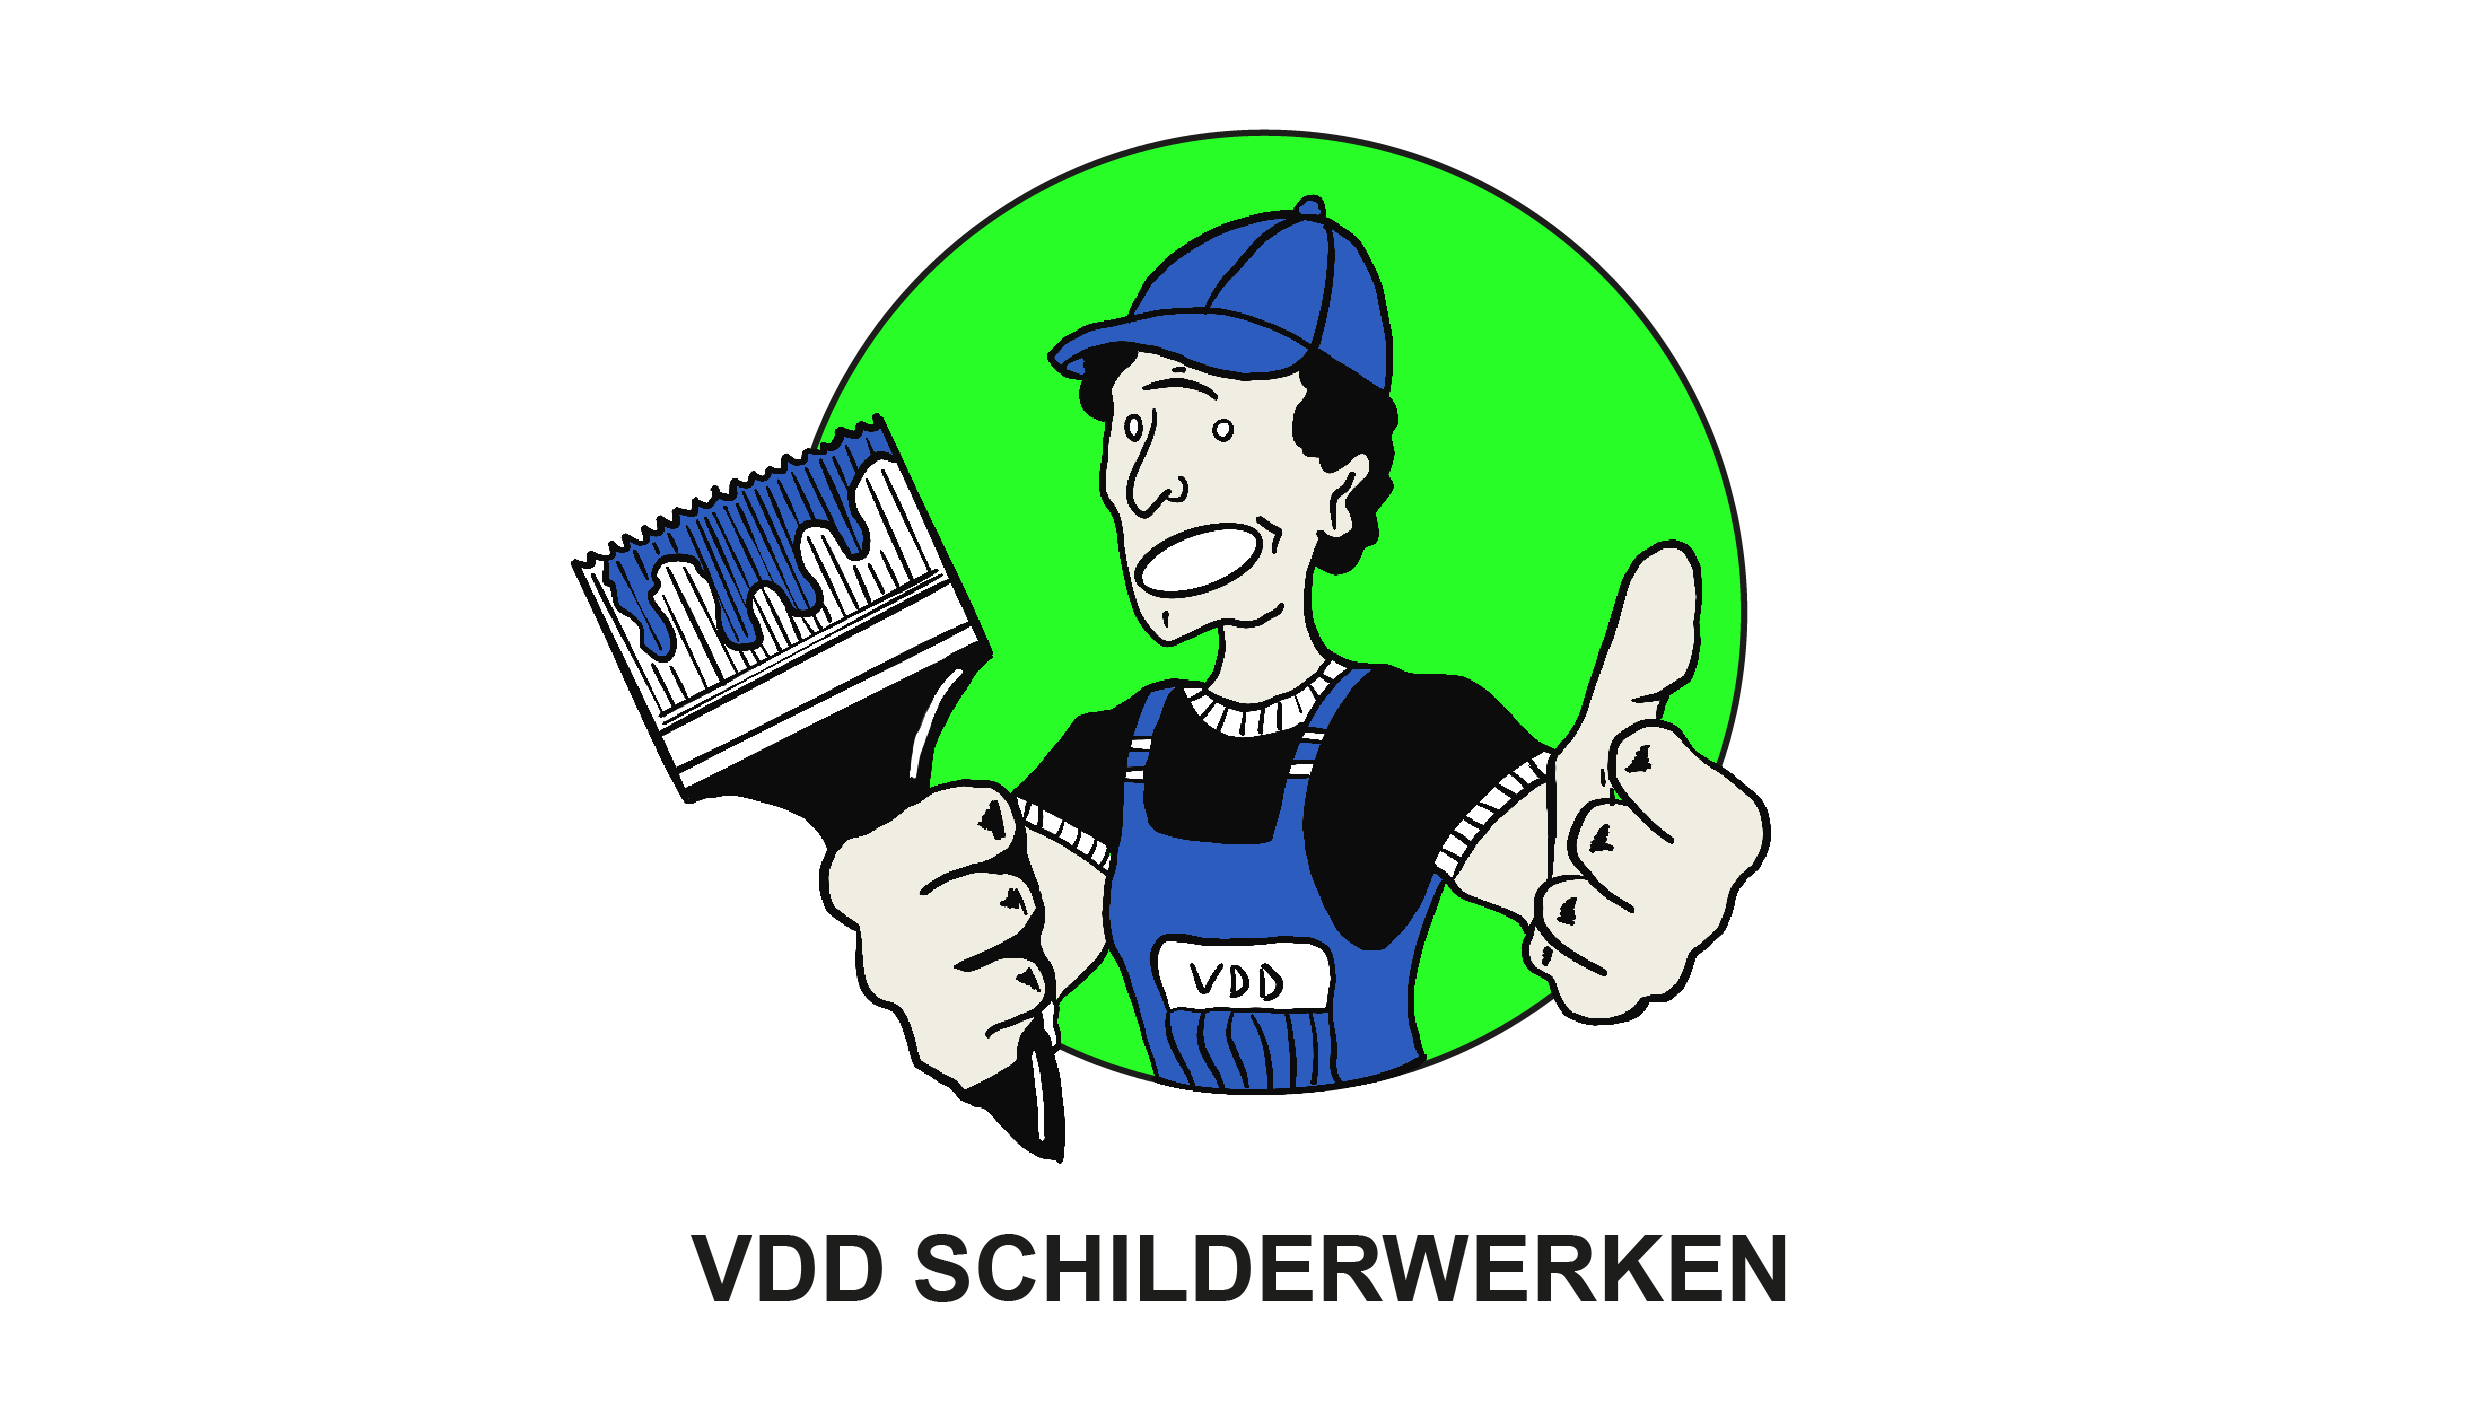 logo VDD Schilderwerken CommV zwart